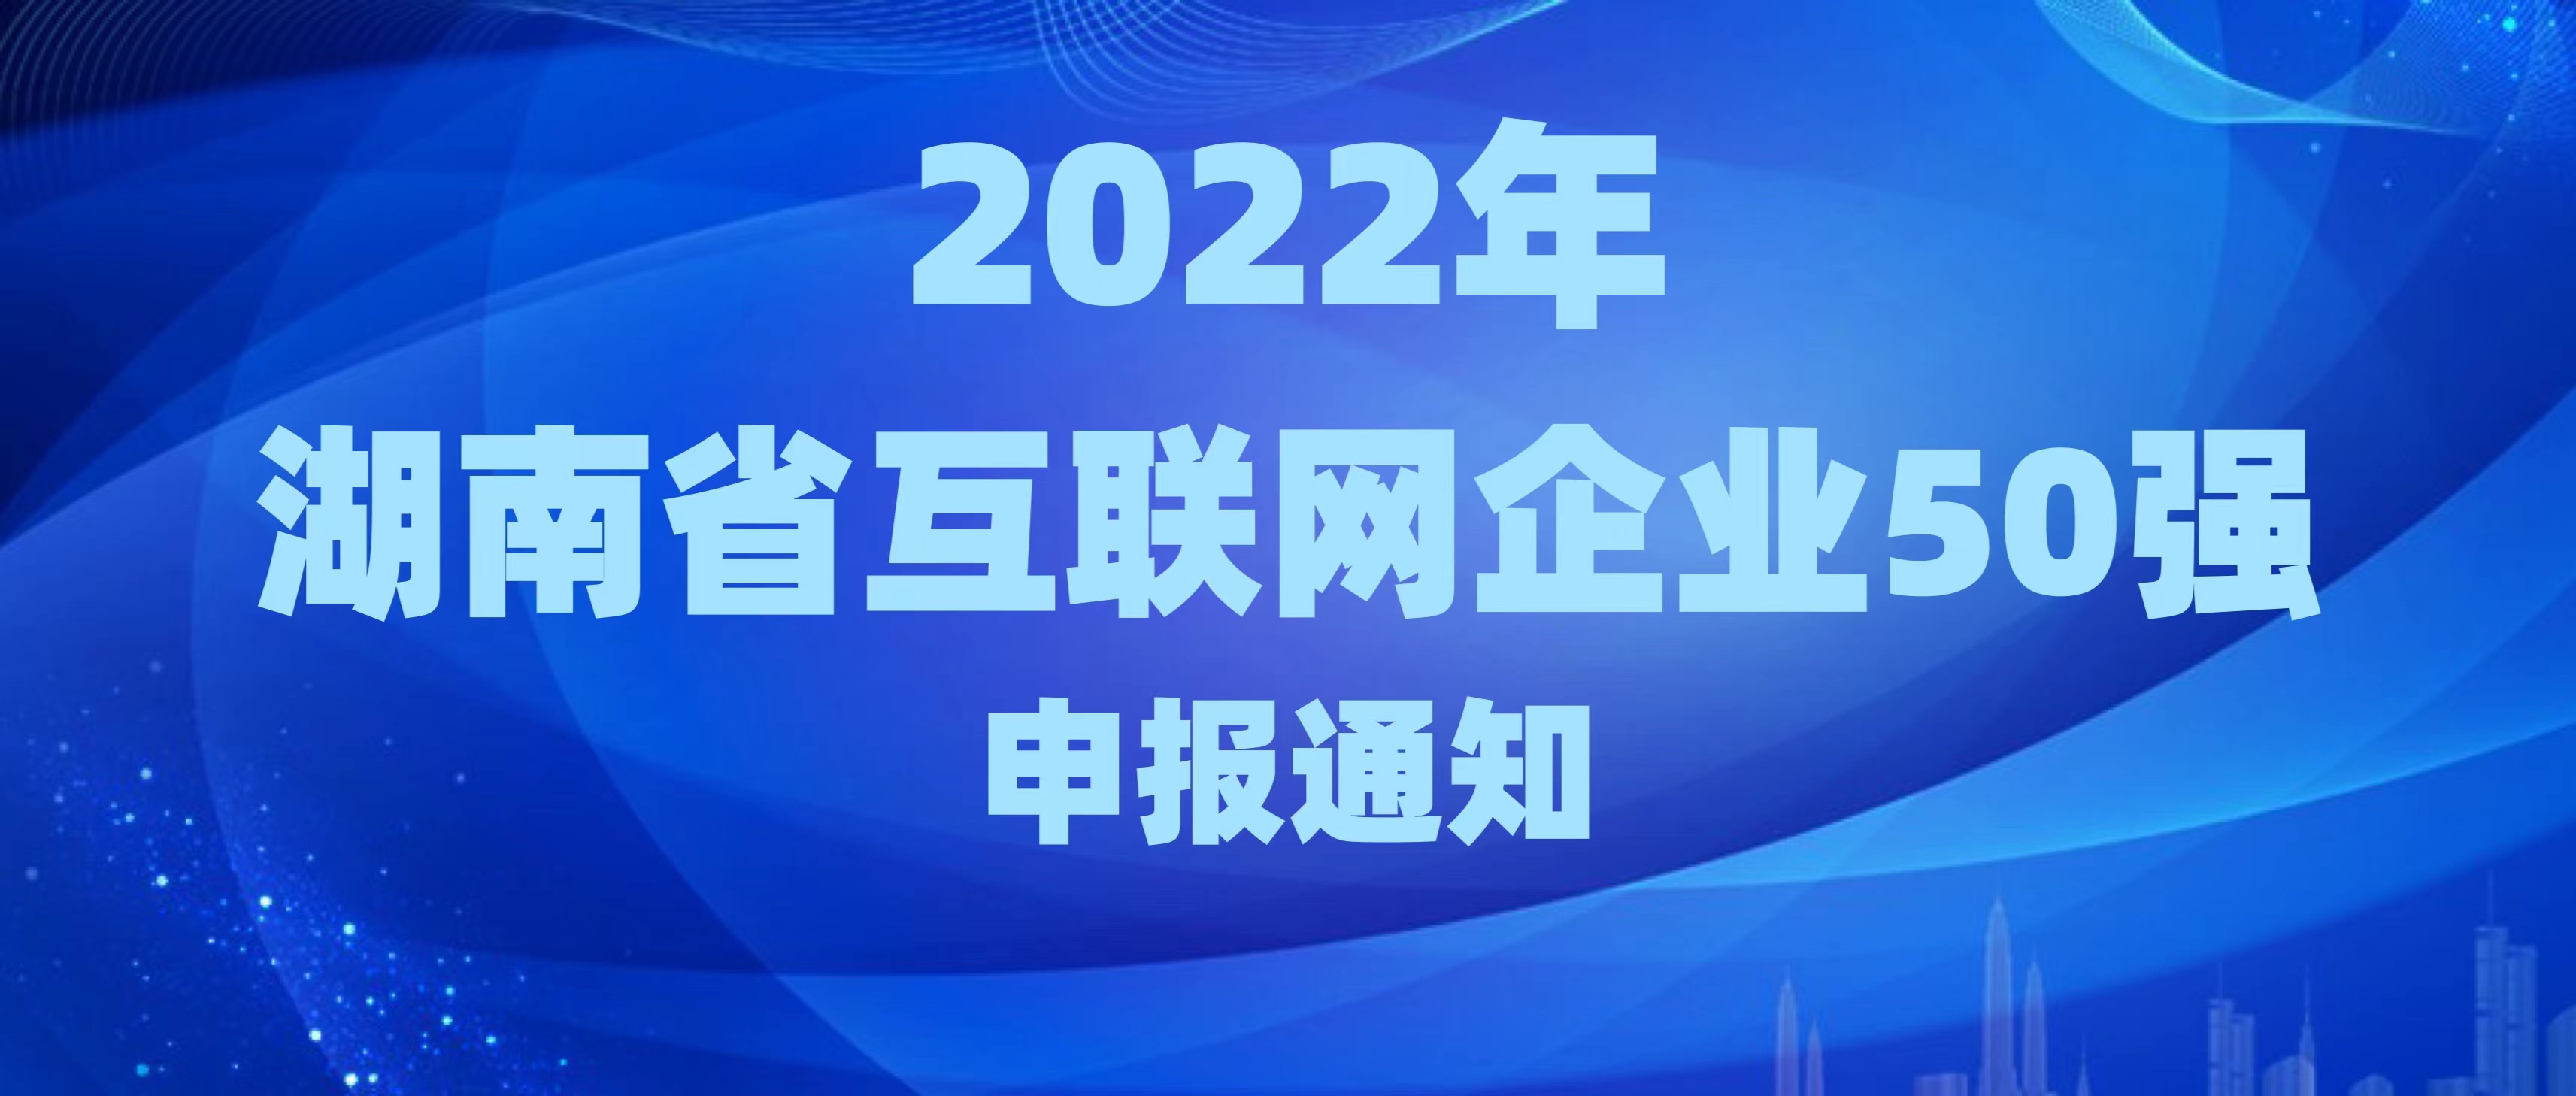 關于申報2022年湖南省互聯網企業50強的通知